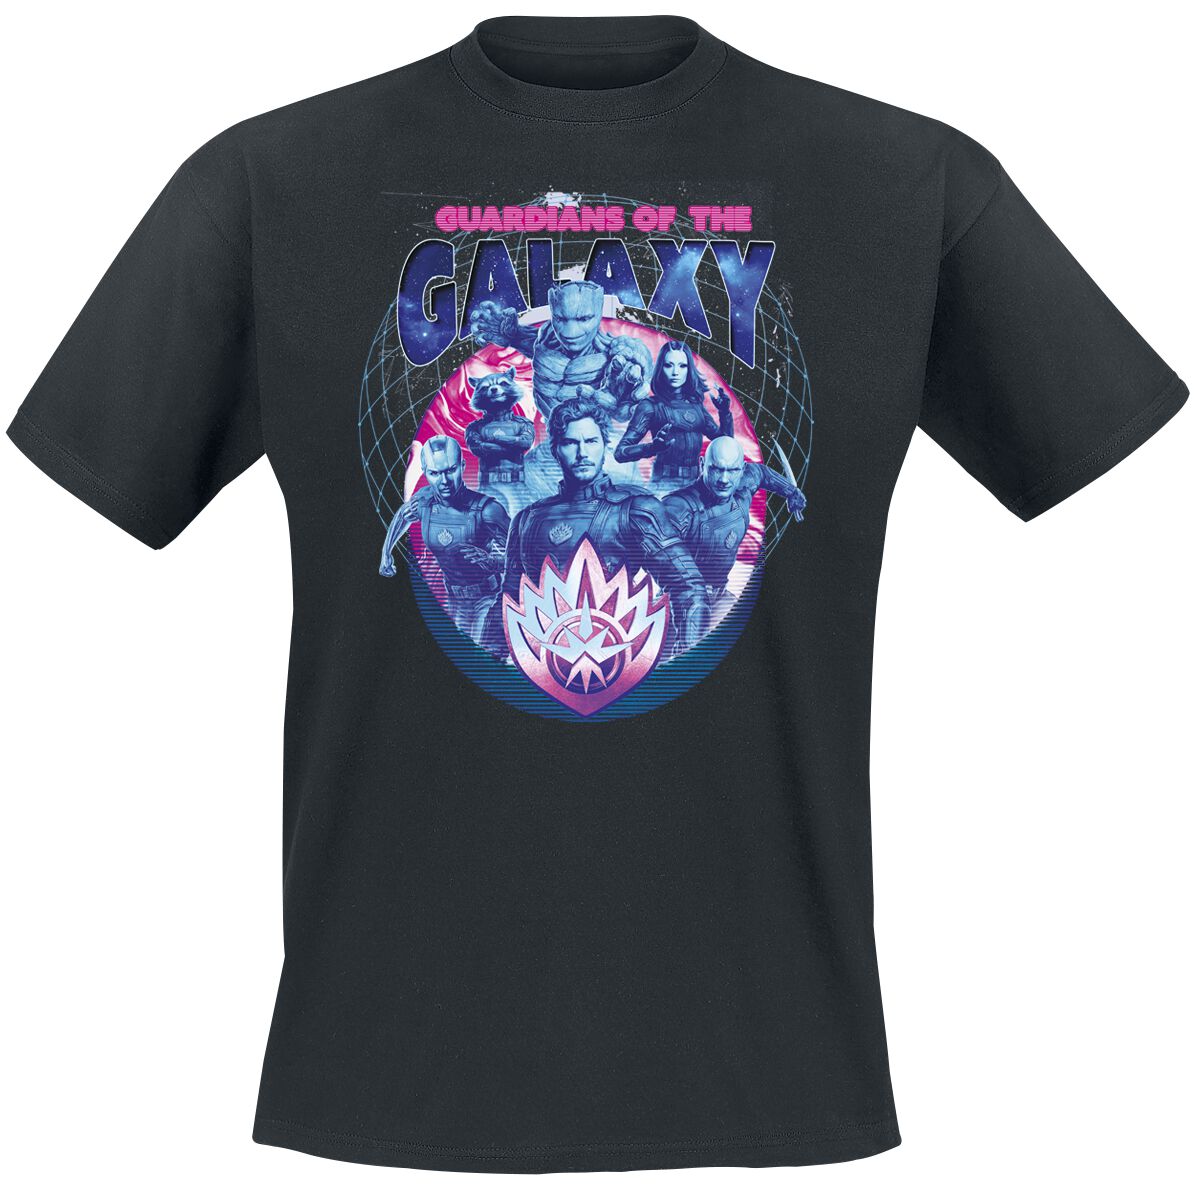 Guardians Of The Galaxy - Marvel T-Shirt - Vol. 3 - Guardians - S bis XXL - für Männer - Größe XL - schwarz  - EMP exklusives Merchandise!